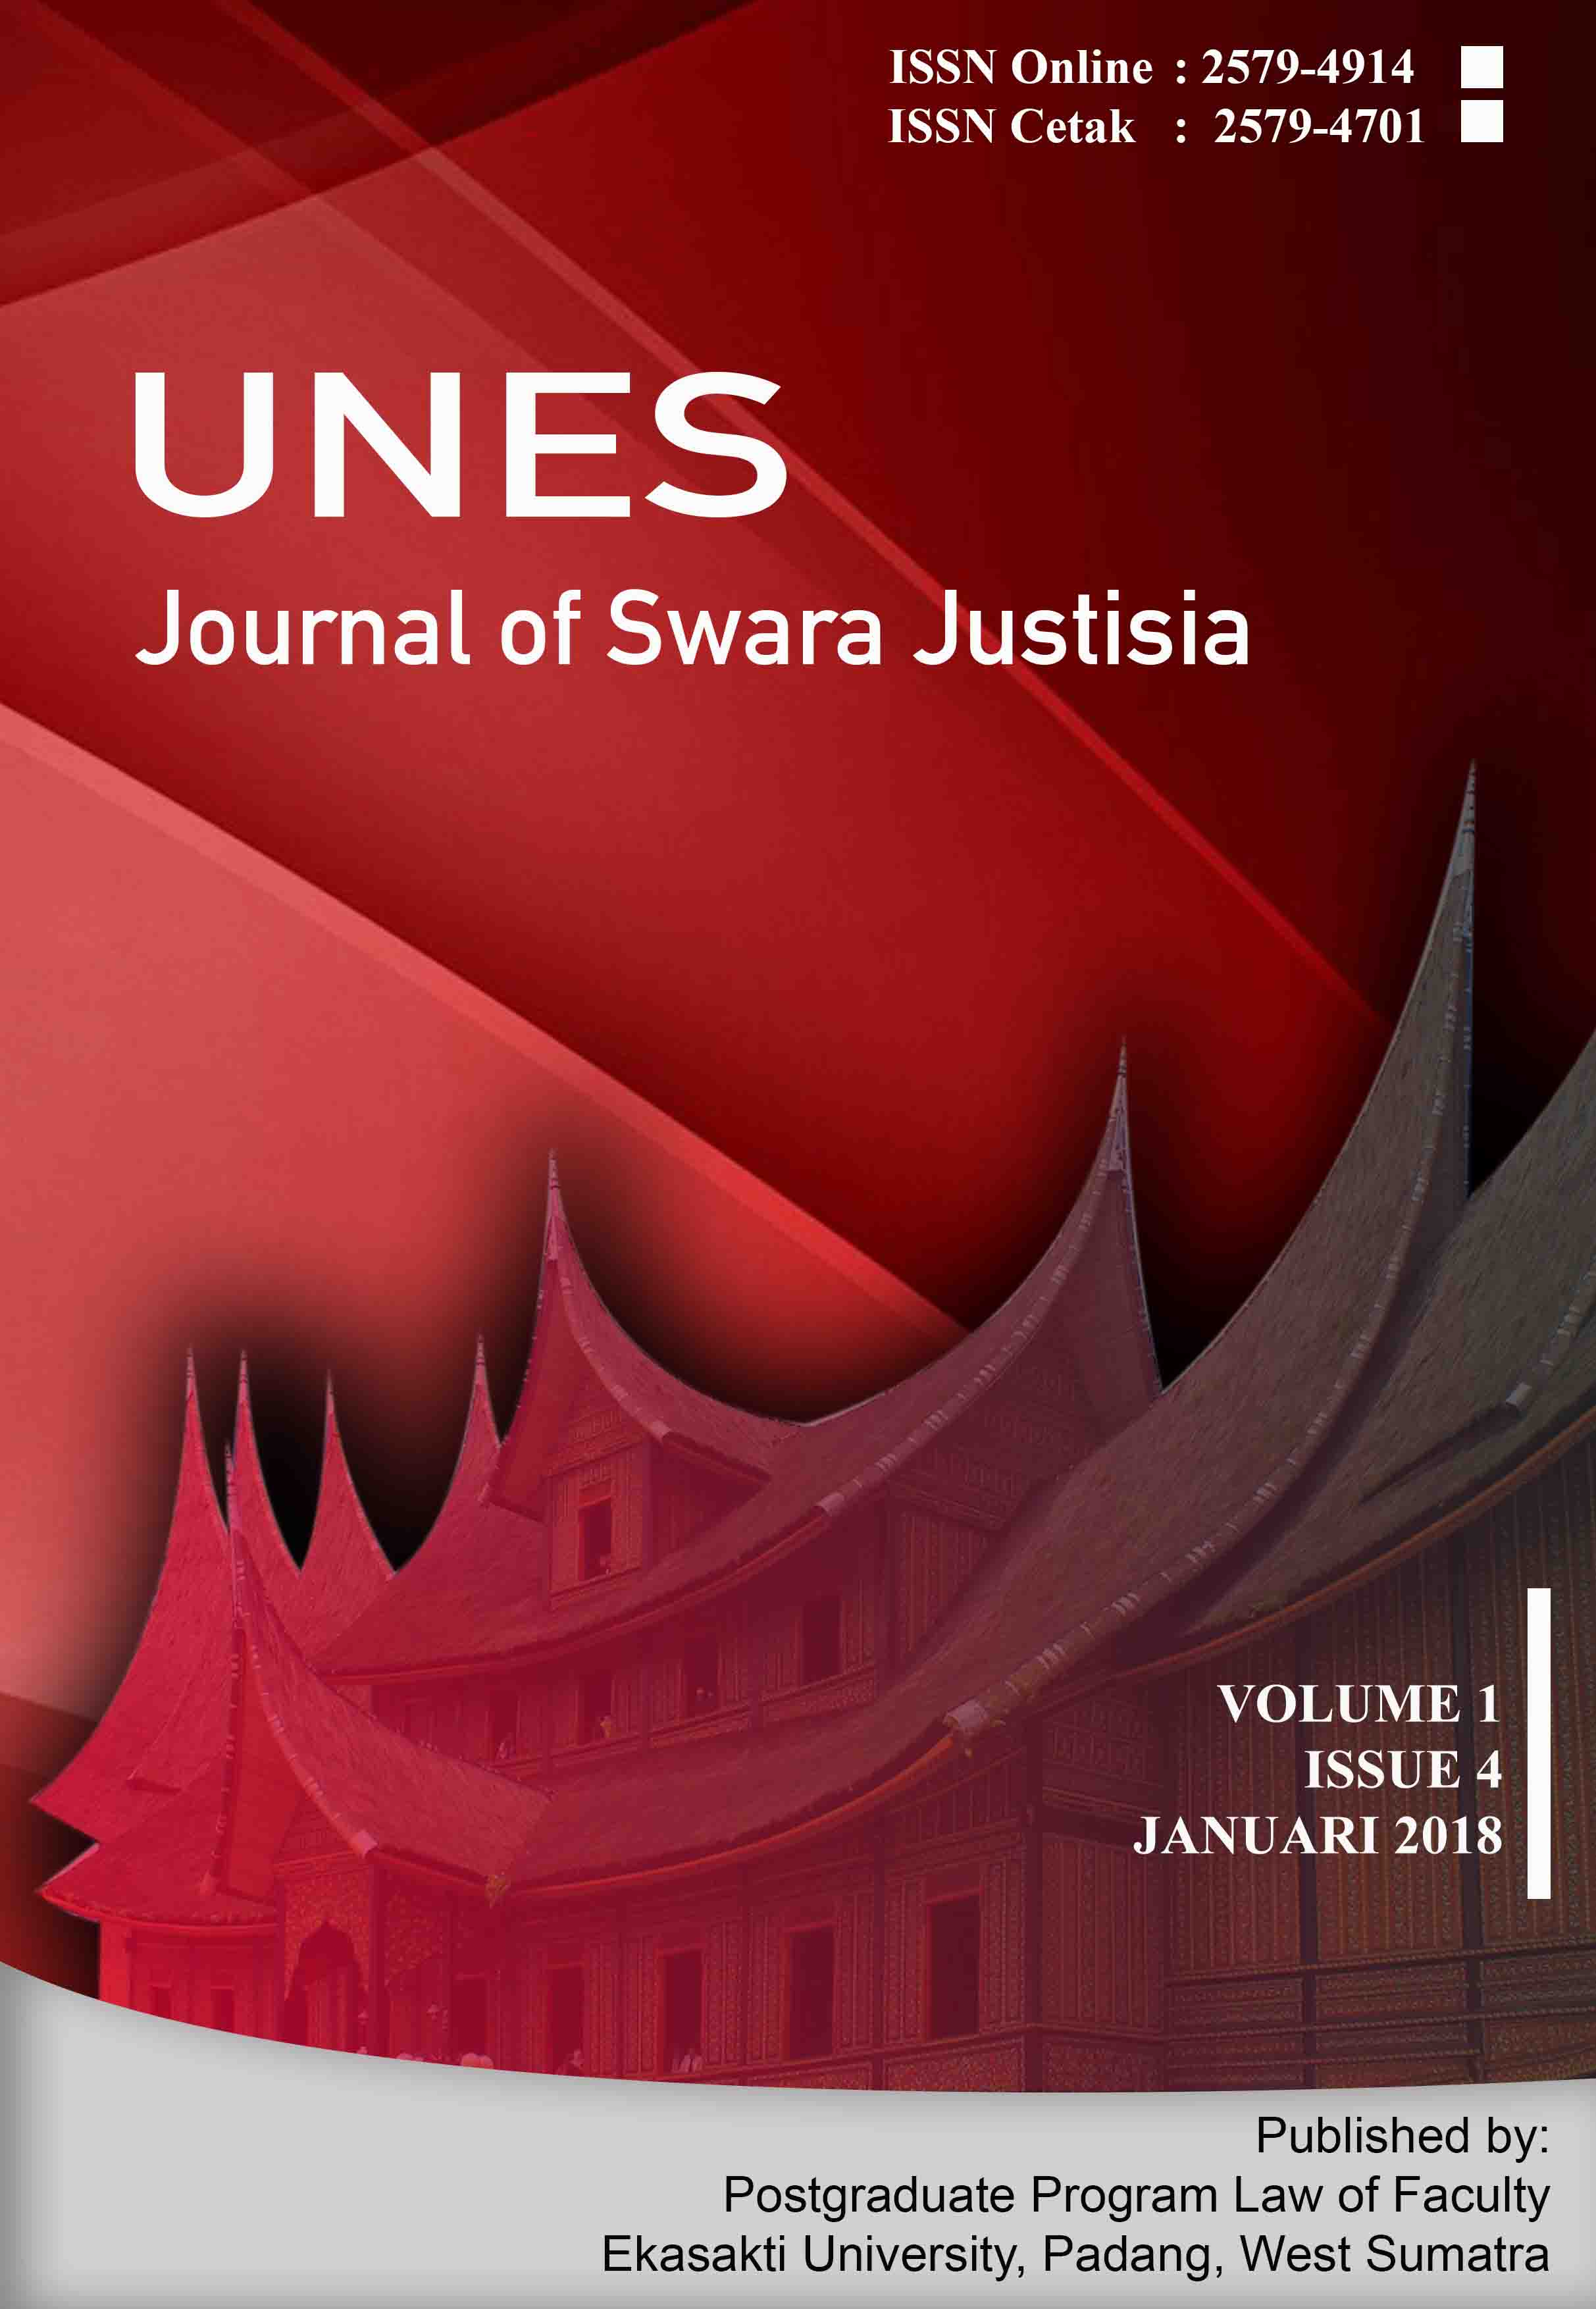 								View Vol. 1 No. 4 (2018): Unes Journal of Swara Justisia (Januari 2018)
							